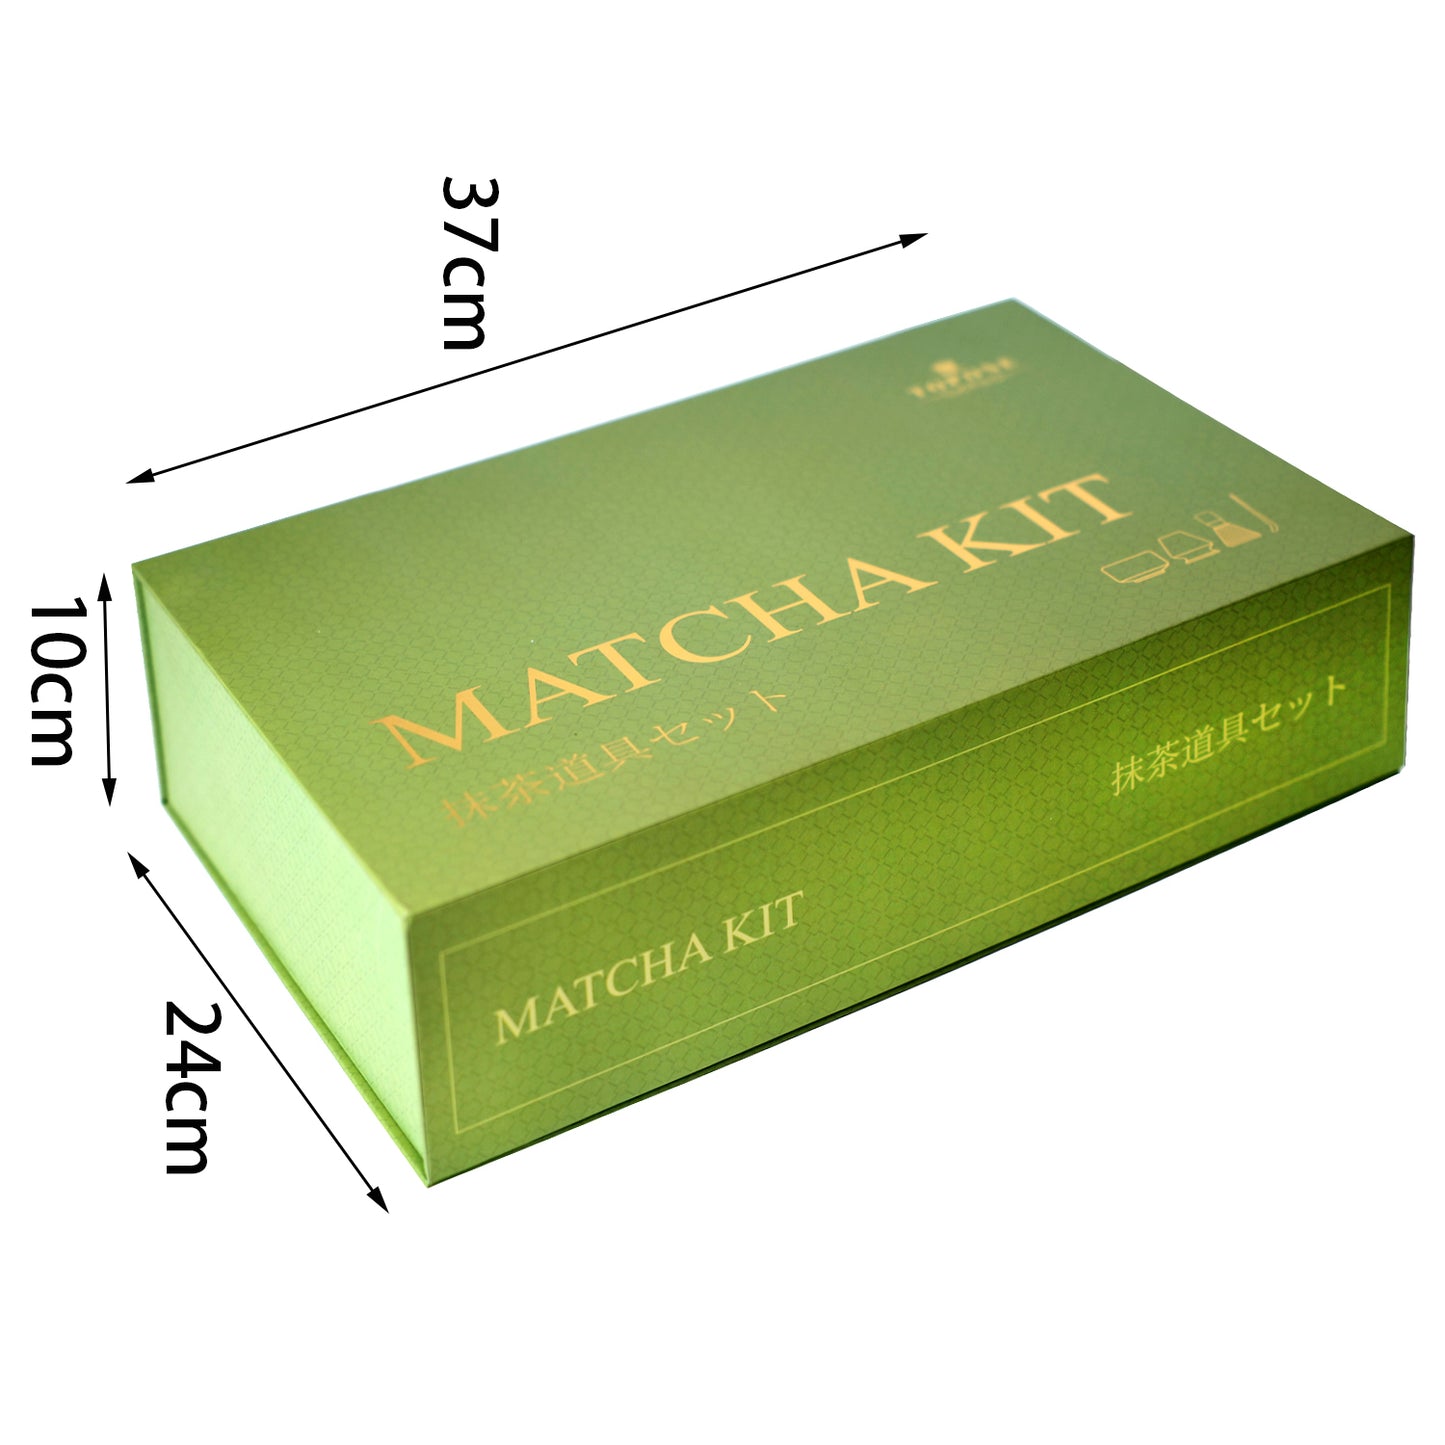 7-teiliges japanisches Matcha-Tee-Set, Matcha-Kit, mit Matcha-Schale (Ausgießer), Matcha-Tee-Schneebesen, Schneebesenhalter, Matcha-Pulver-Caddy, Sieb Elegantes Matcha-Set zum Verschenken oder für den persönlichen Gebrauch